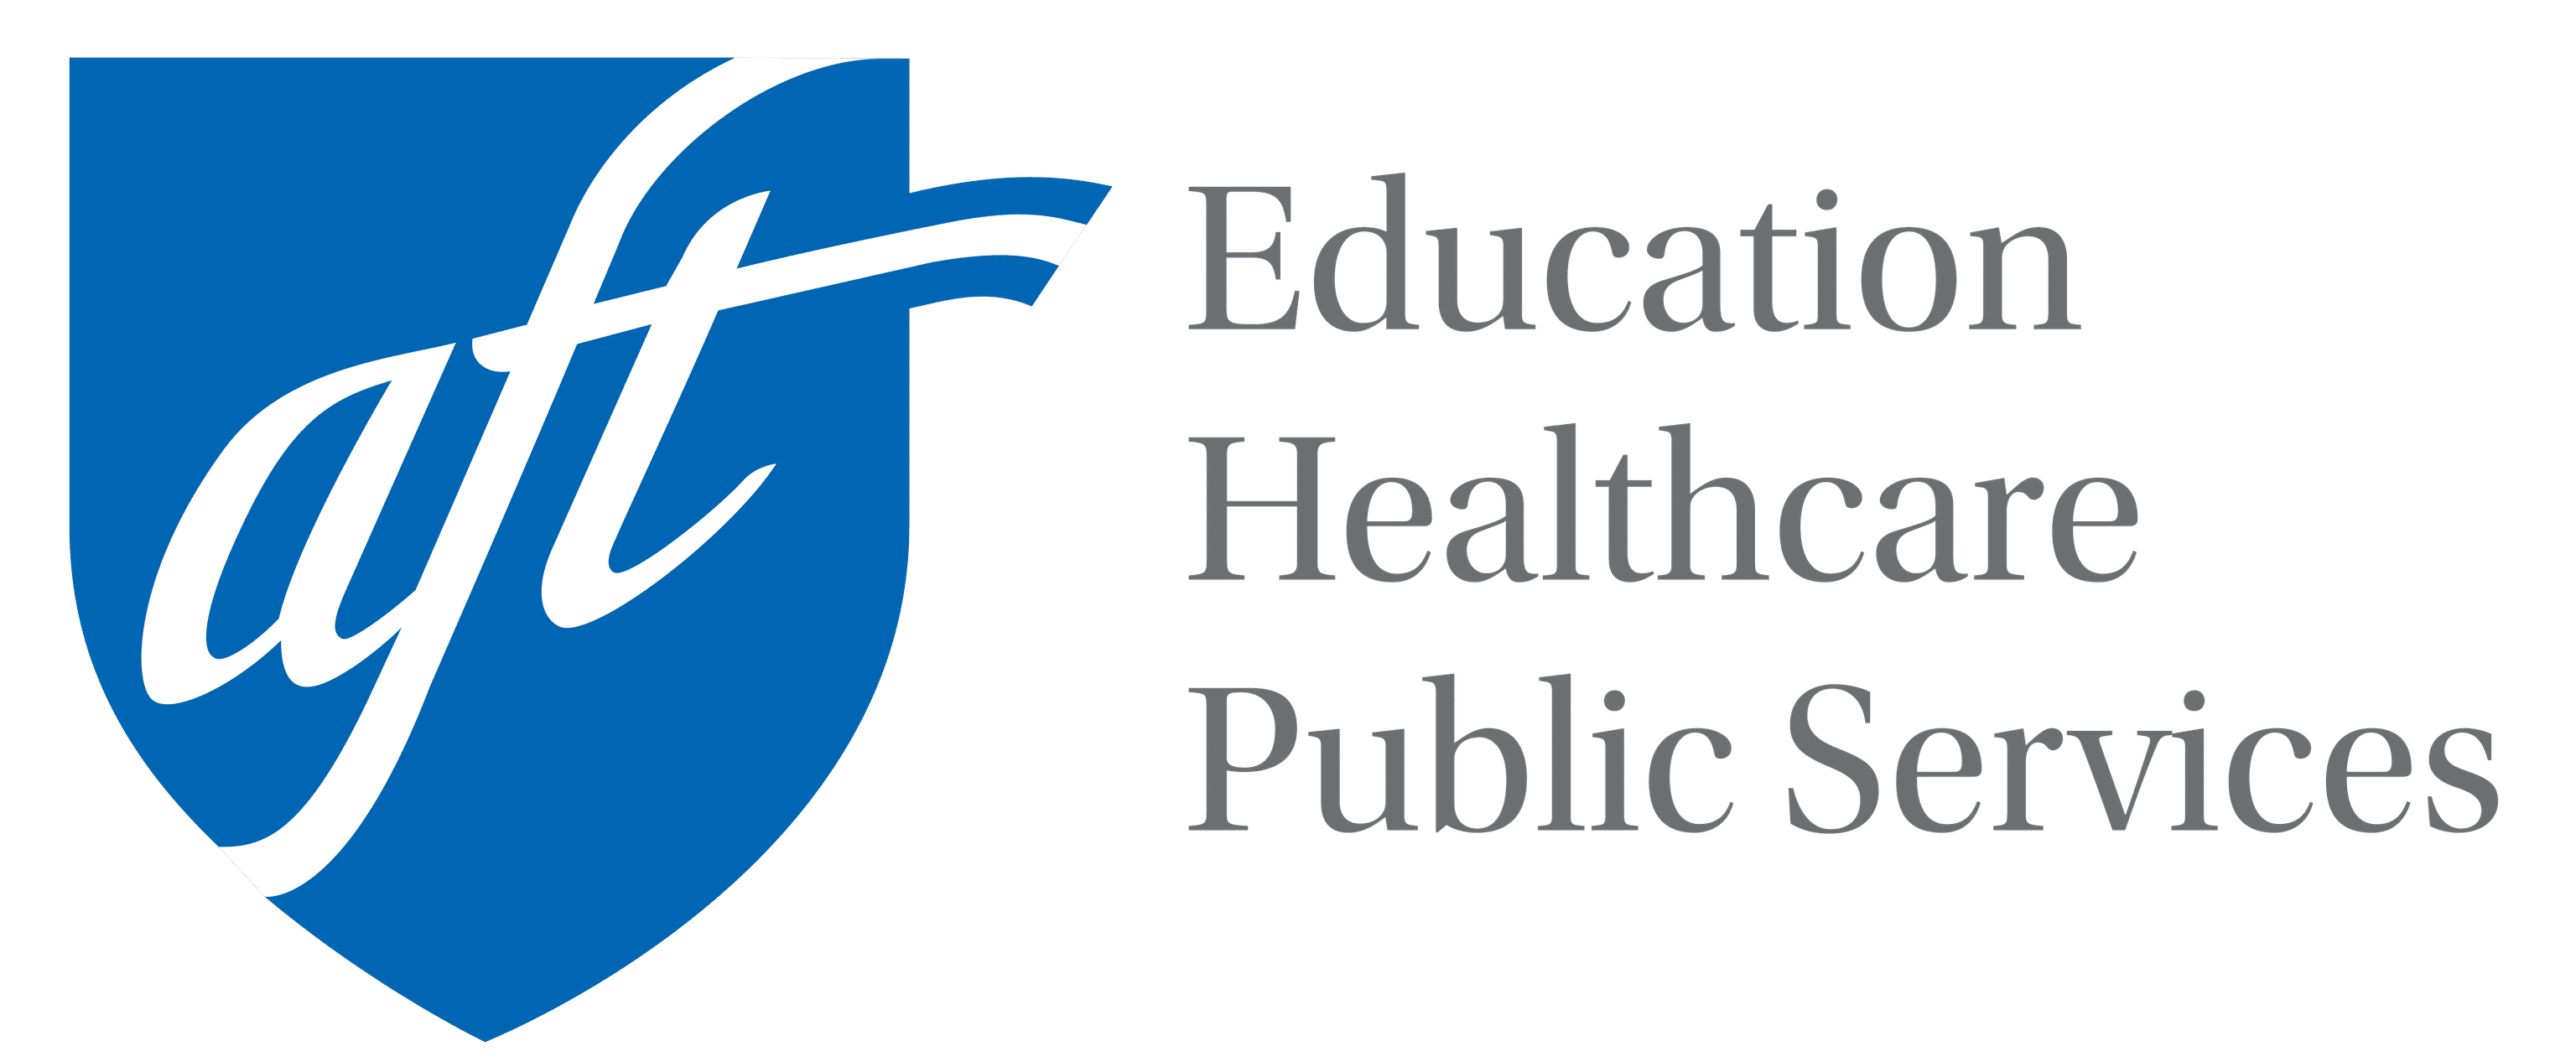 AFT Education Healthcare Public Services